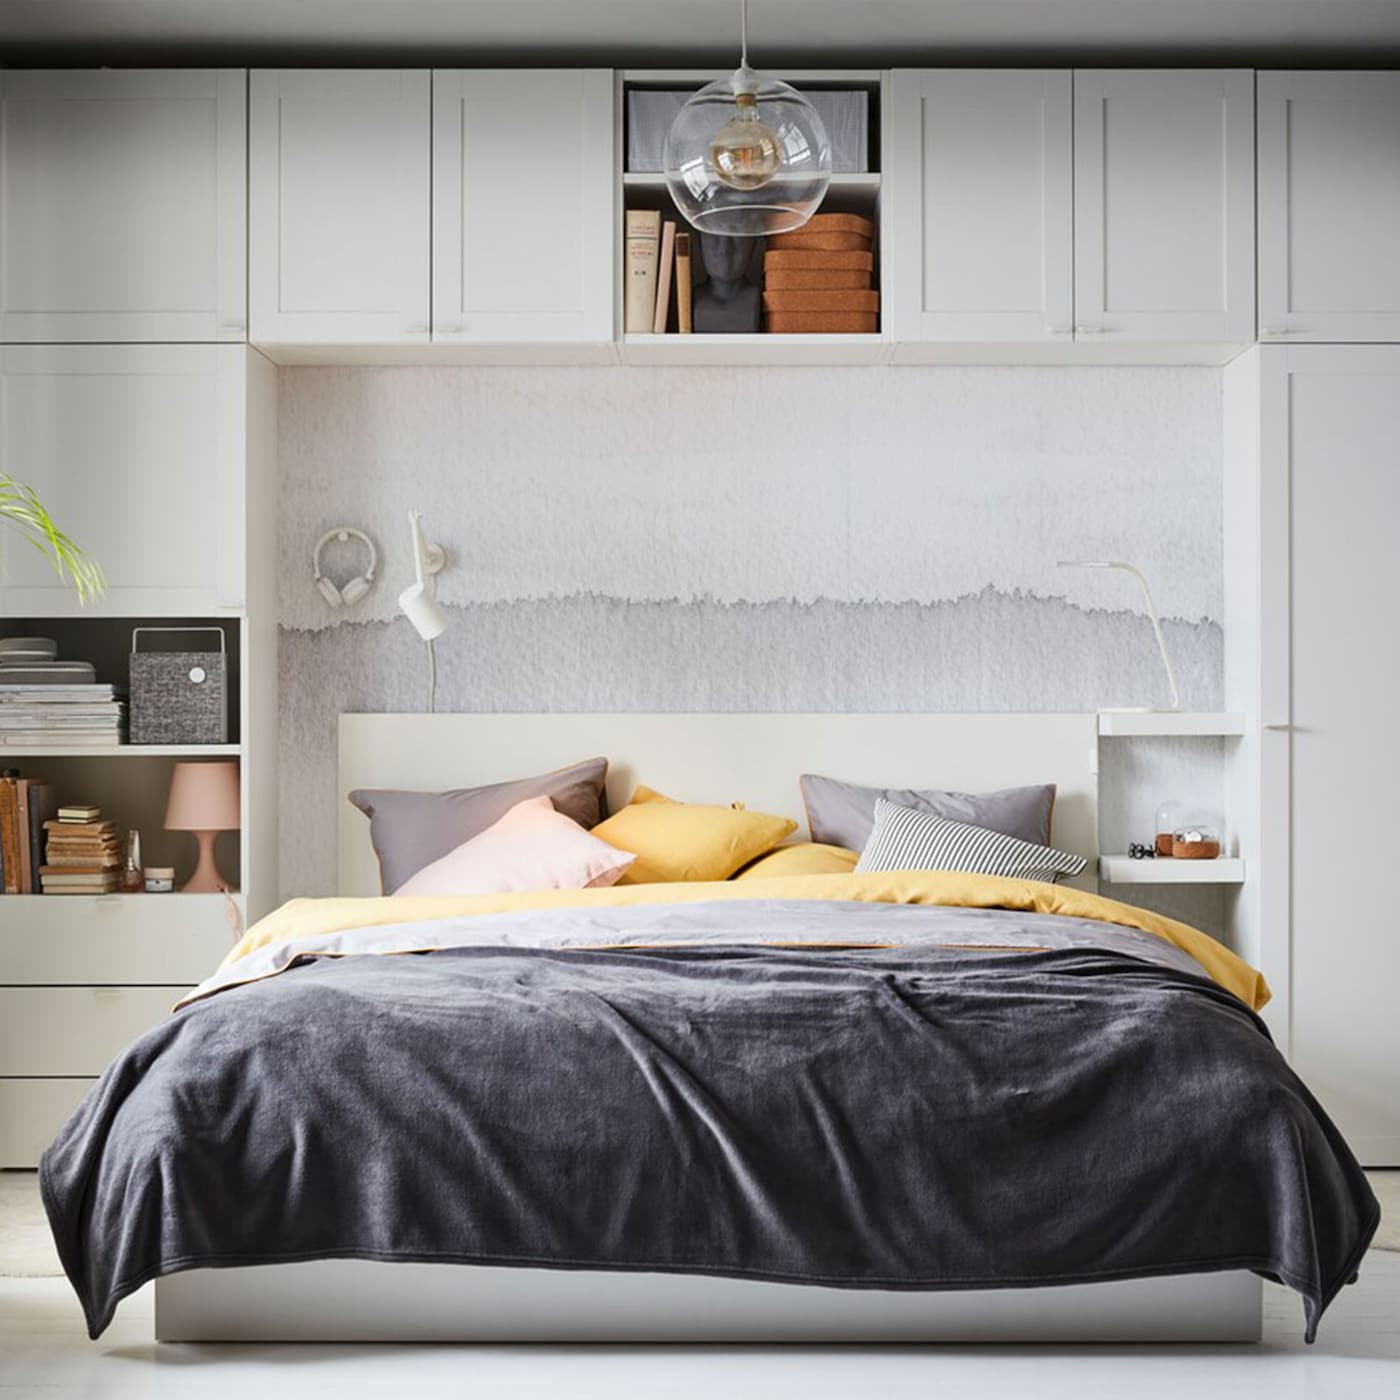 Ikea Bedroom Storage
 Create your own bedroom storage IKEA